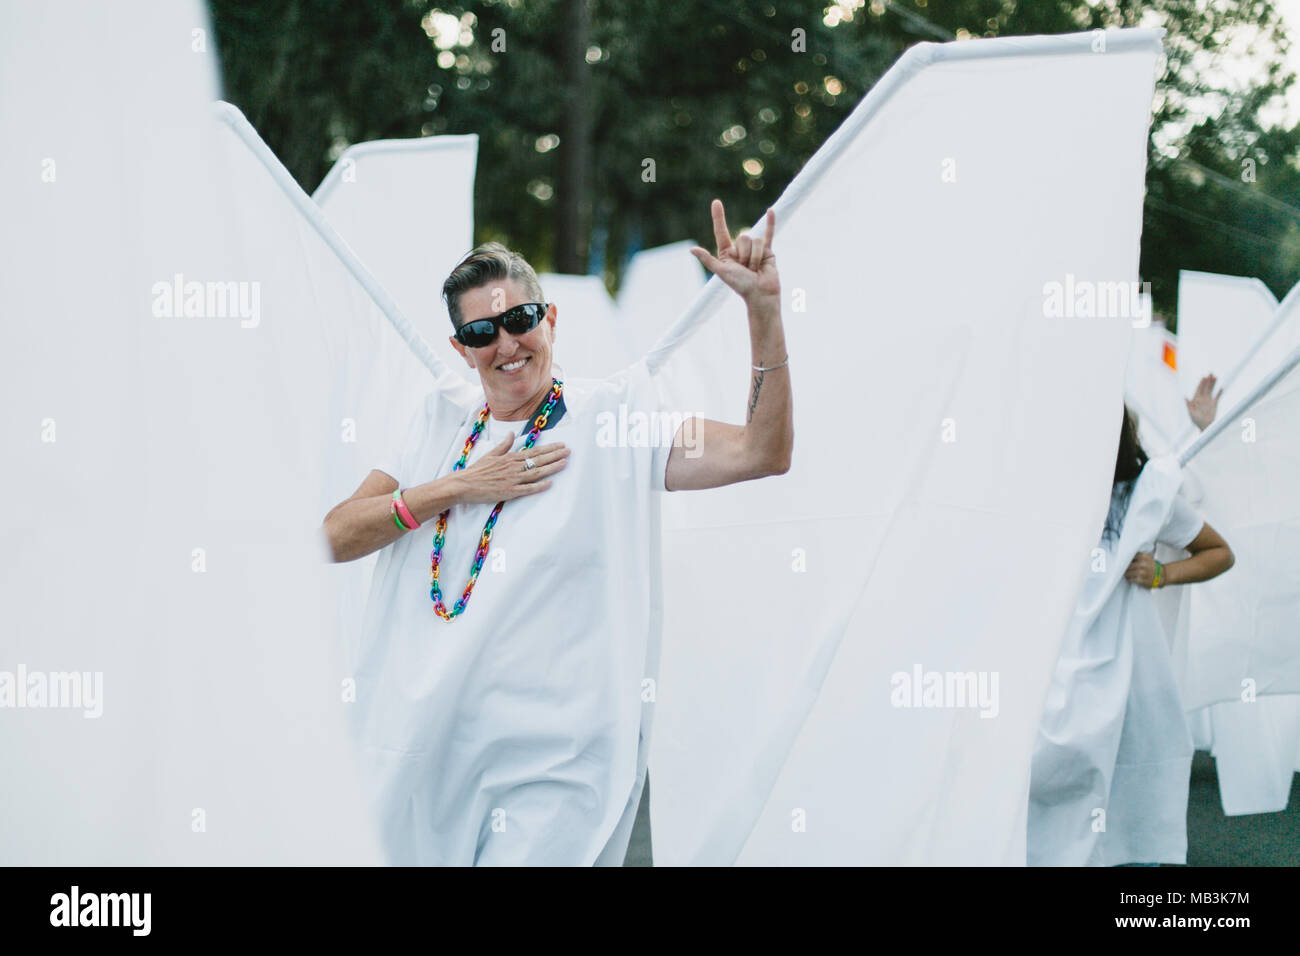 La gente vestita come angeli a Orlando Pride Parade (2016). Foto Stock